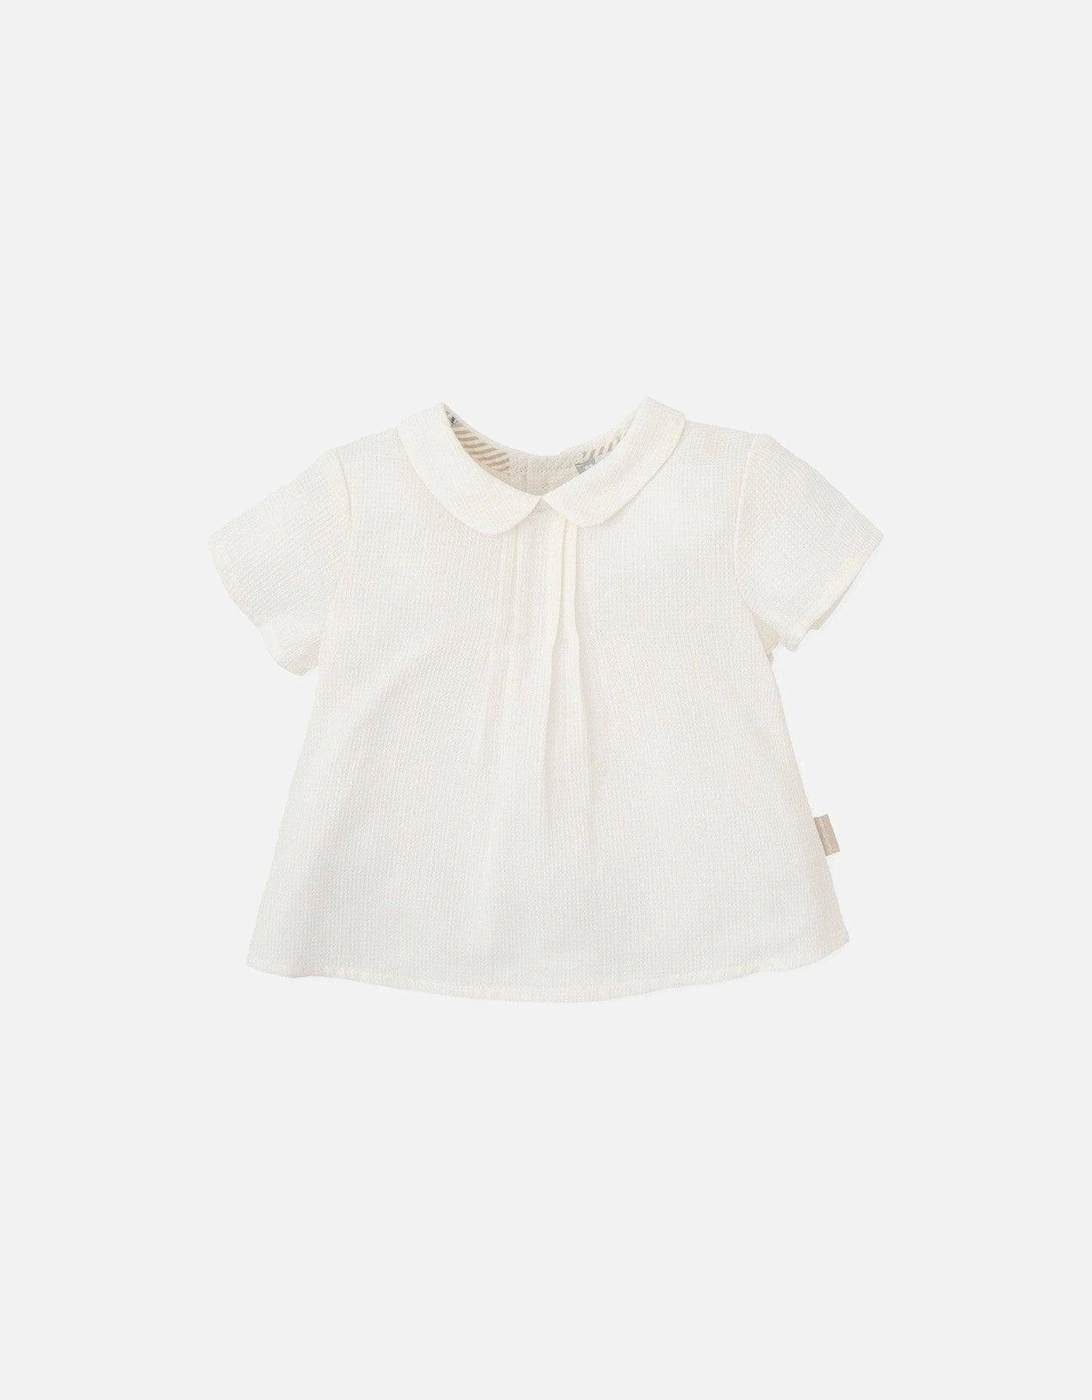 Baby Boys White Linen Shirt, 3 of 2